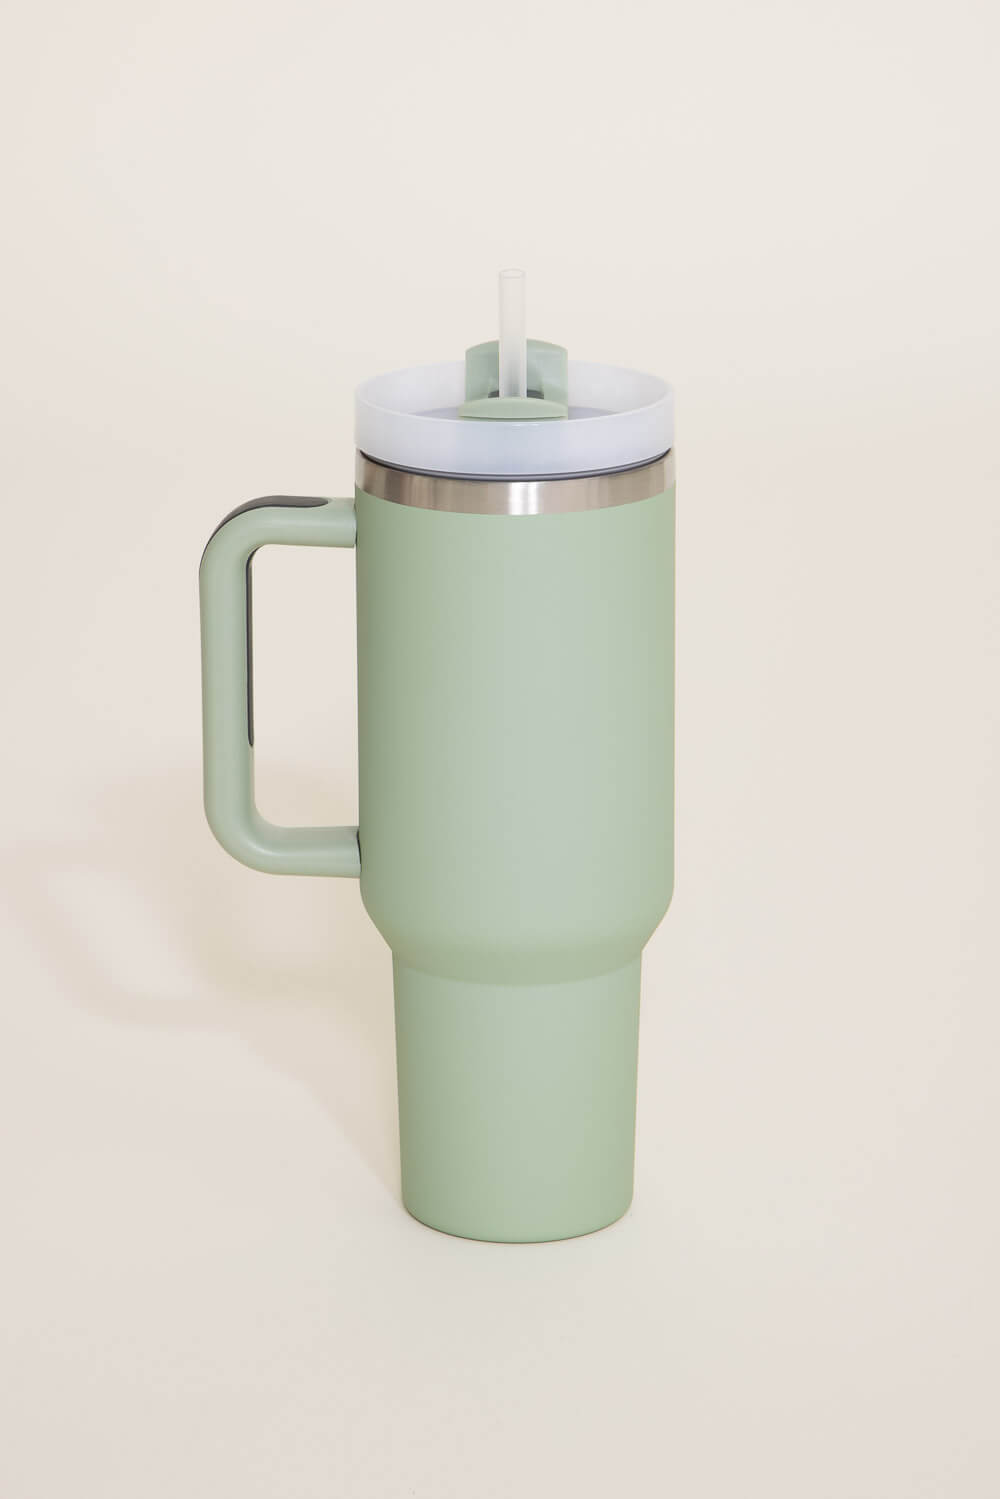 Stanley 40oz Handled Mug Travel Mug With Handle 